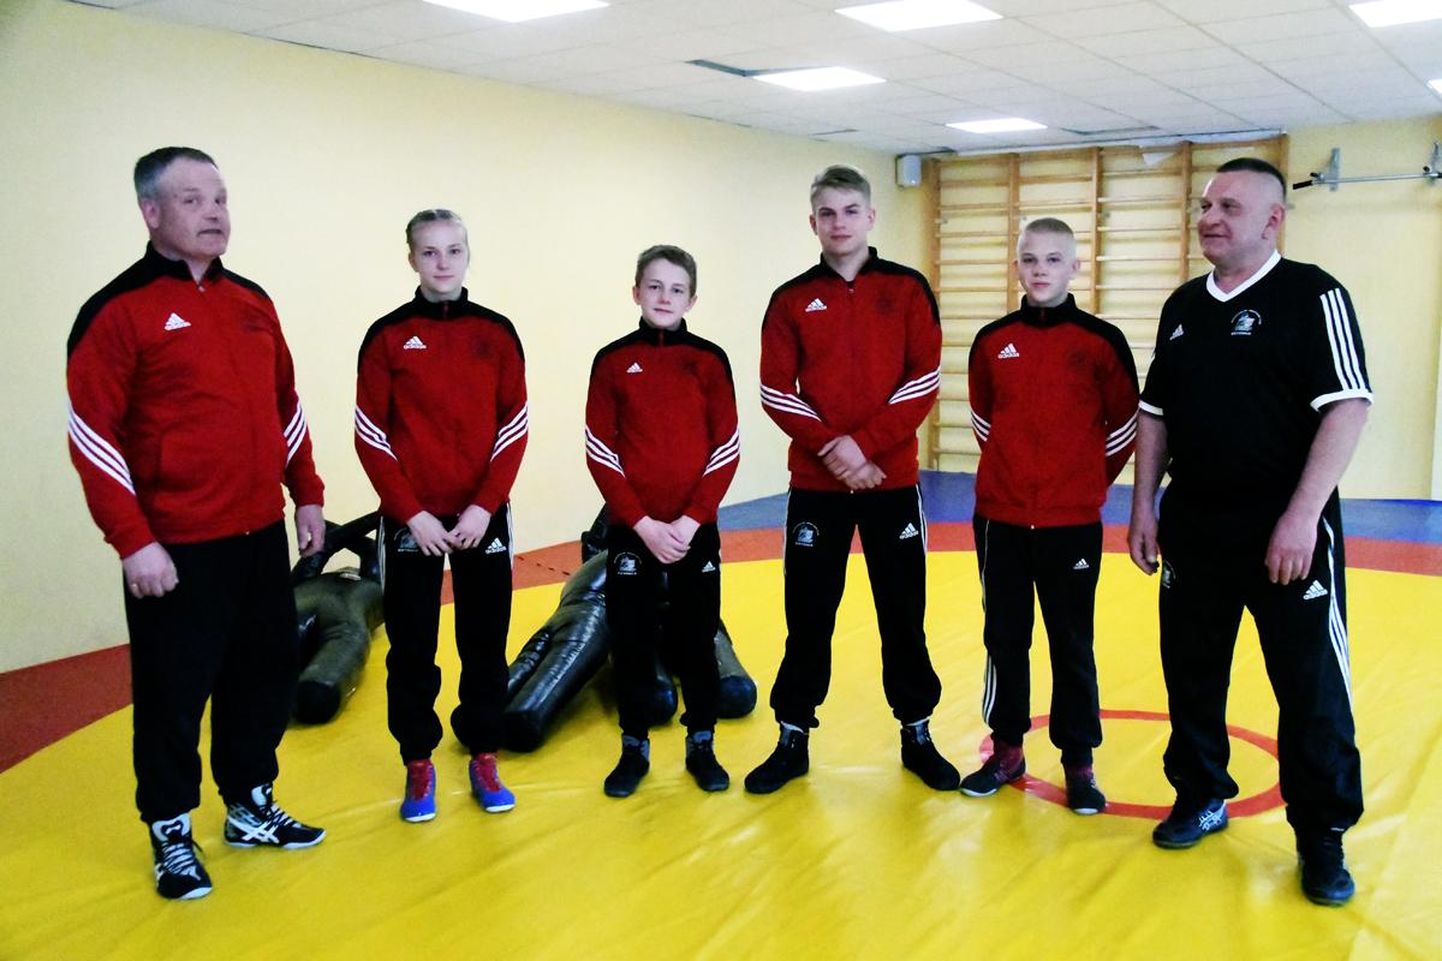 Pildil vasakult: Gristen Heinmets (treener), Tiia-Triin Tomson, Sander Tagu, Robyn Paulberg, Raimond Uibo ja Raigo Paulberg (treener).